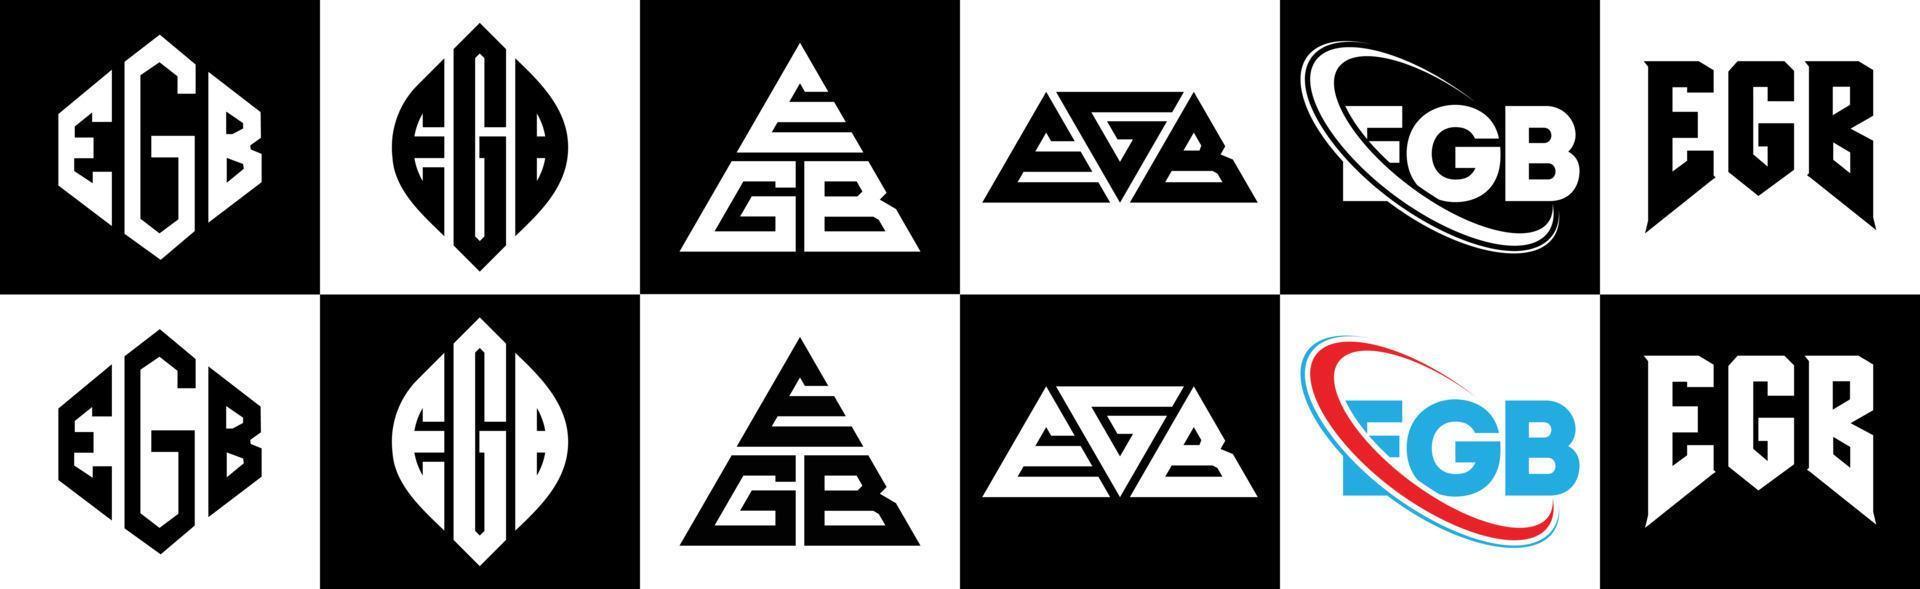 création de logo de lettre egb en six styles. polygone egb, cercle, triangle, hexagone, style plat et simple avec logo de lettre de variation de couleur noir et blanc dans un plan de travail. logo minimaliste et classique egb vecteur